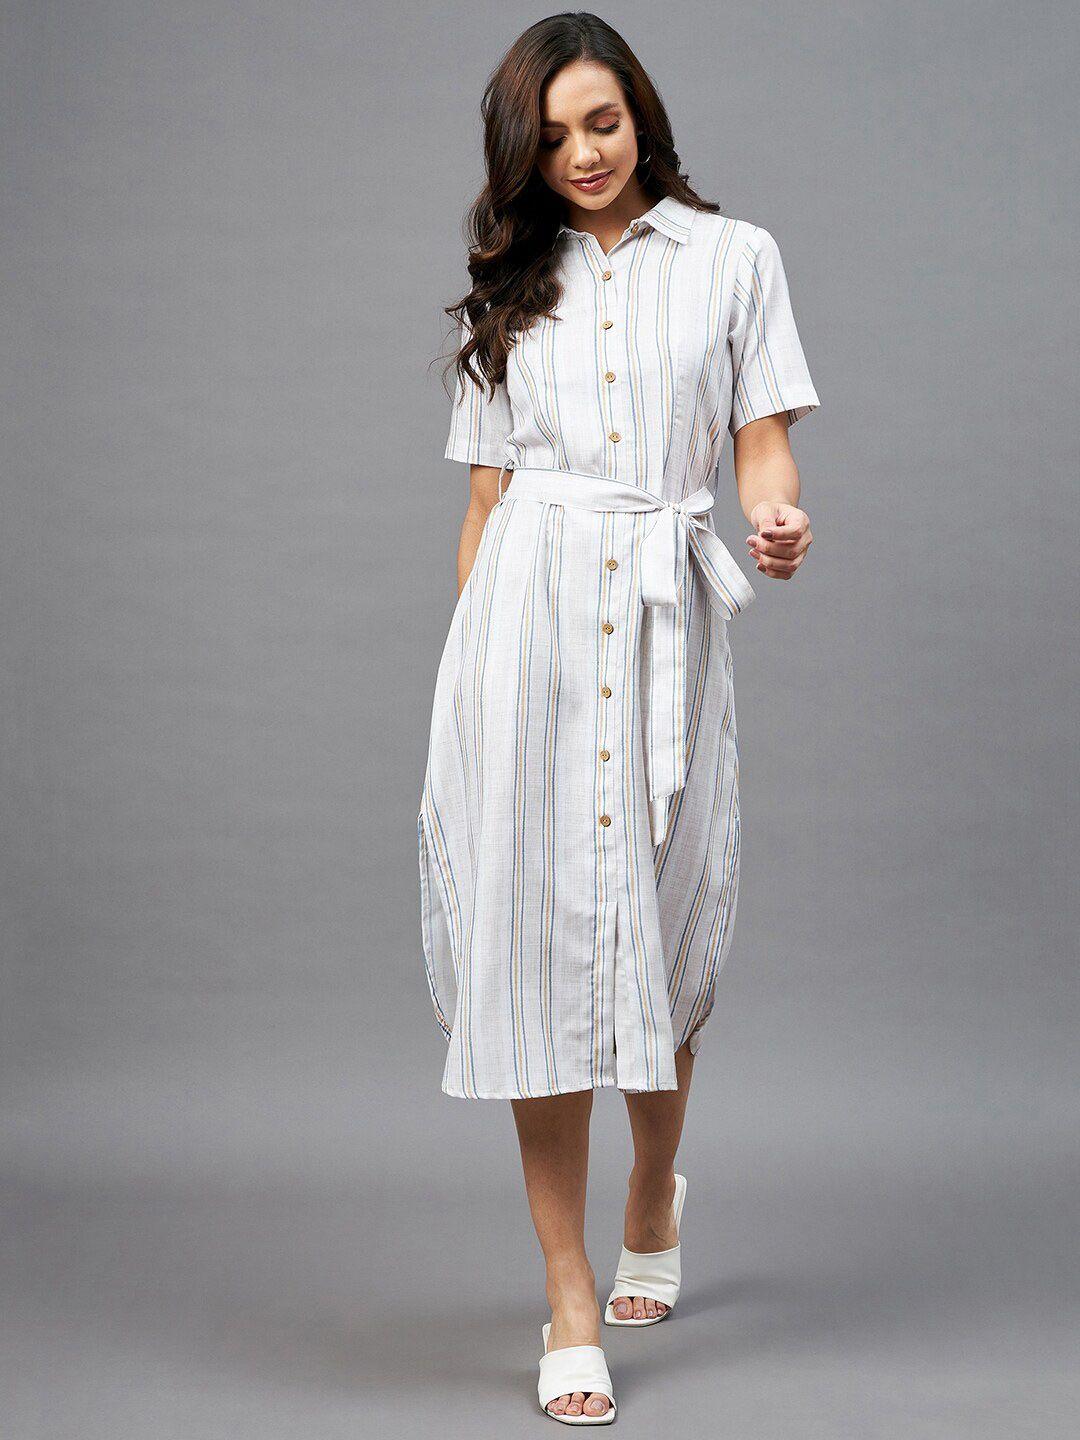 azira women off-white striped shirt midi dress